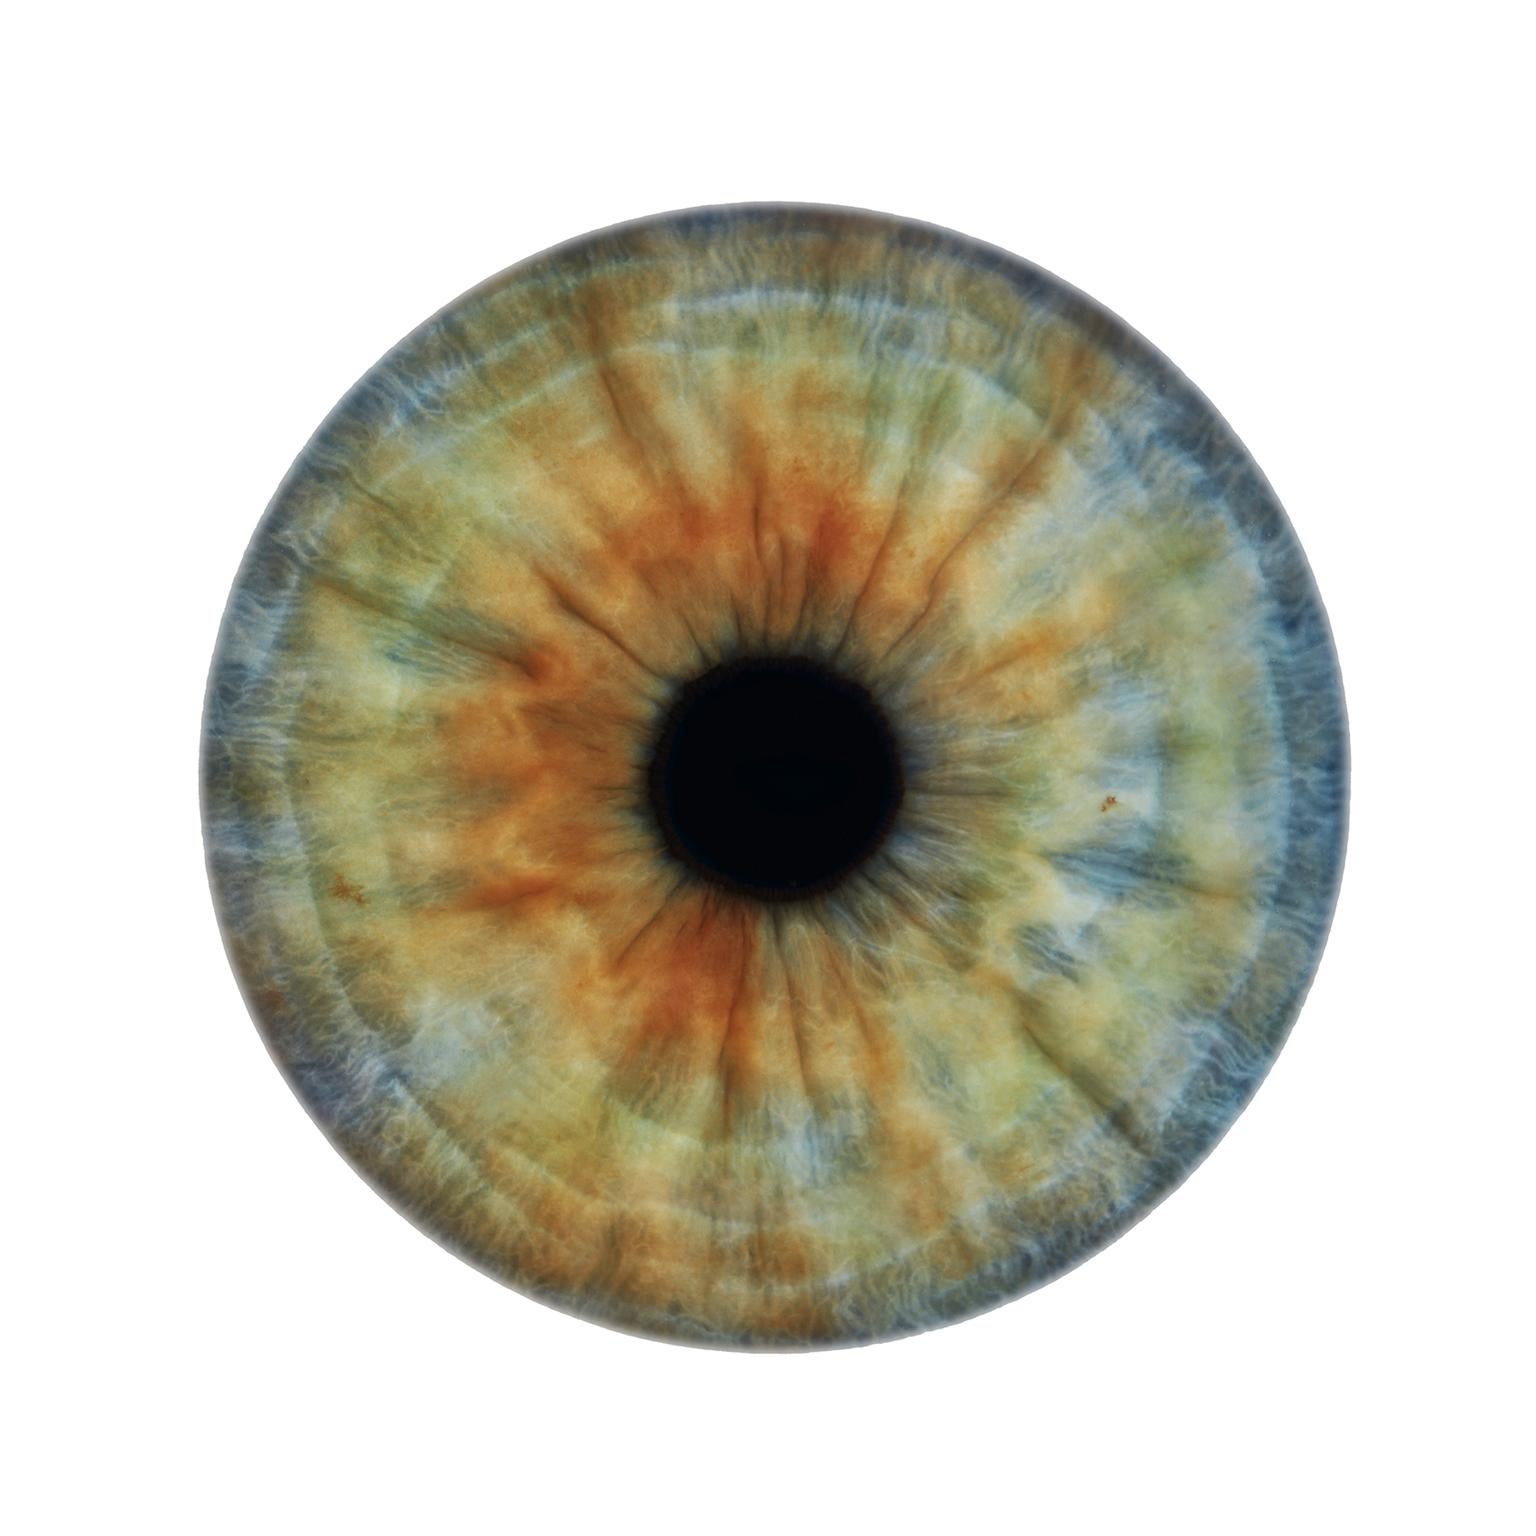 Abstract Print Frank Schott - IRIS IV  - abstraction unique de couleurs dans un cadre circulaire en verre (45" de diamètre)